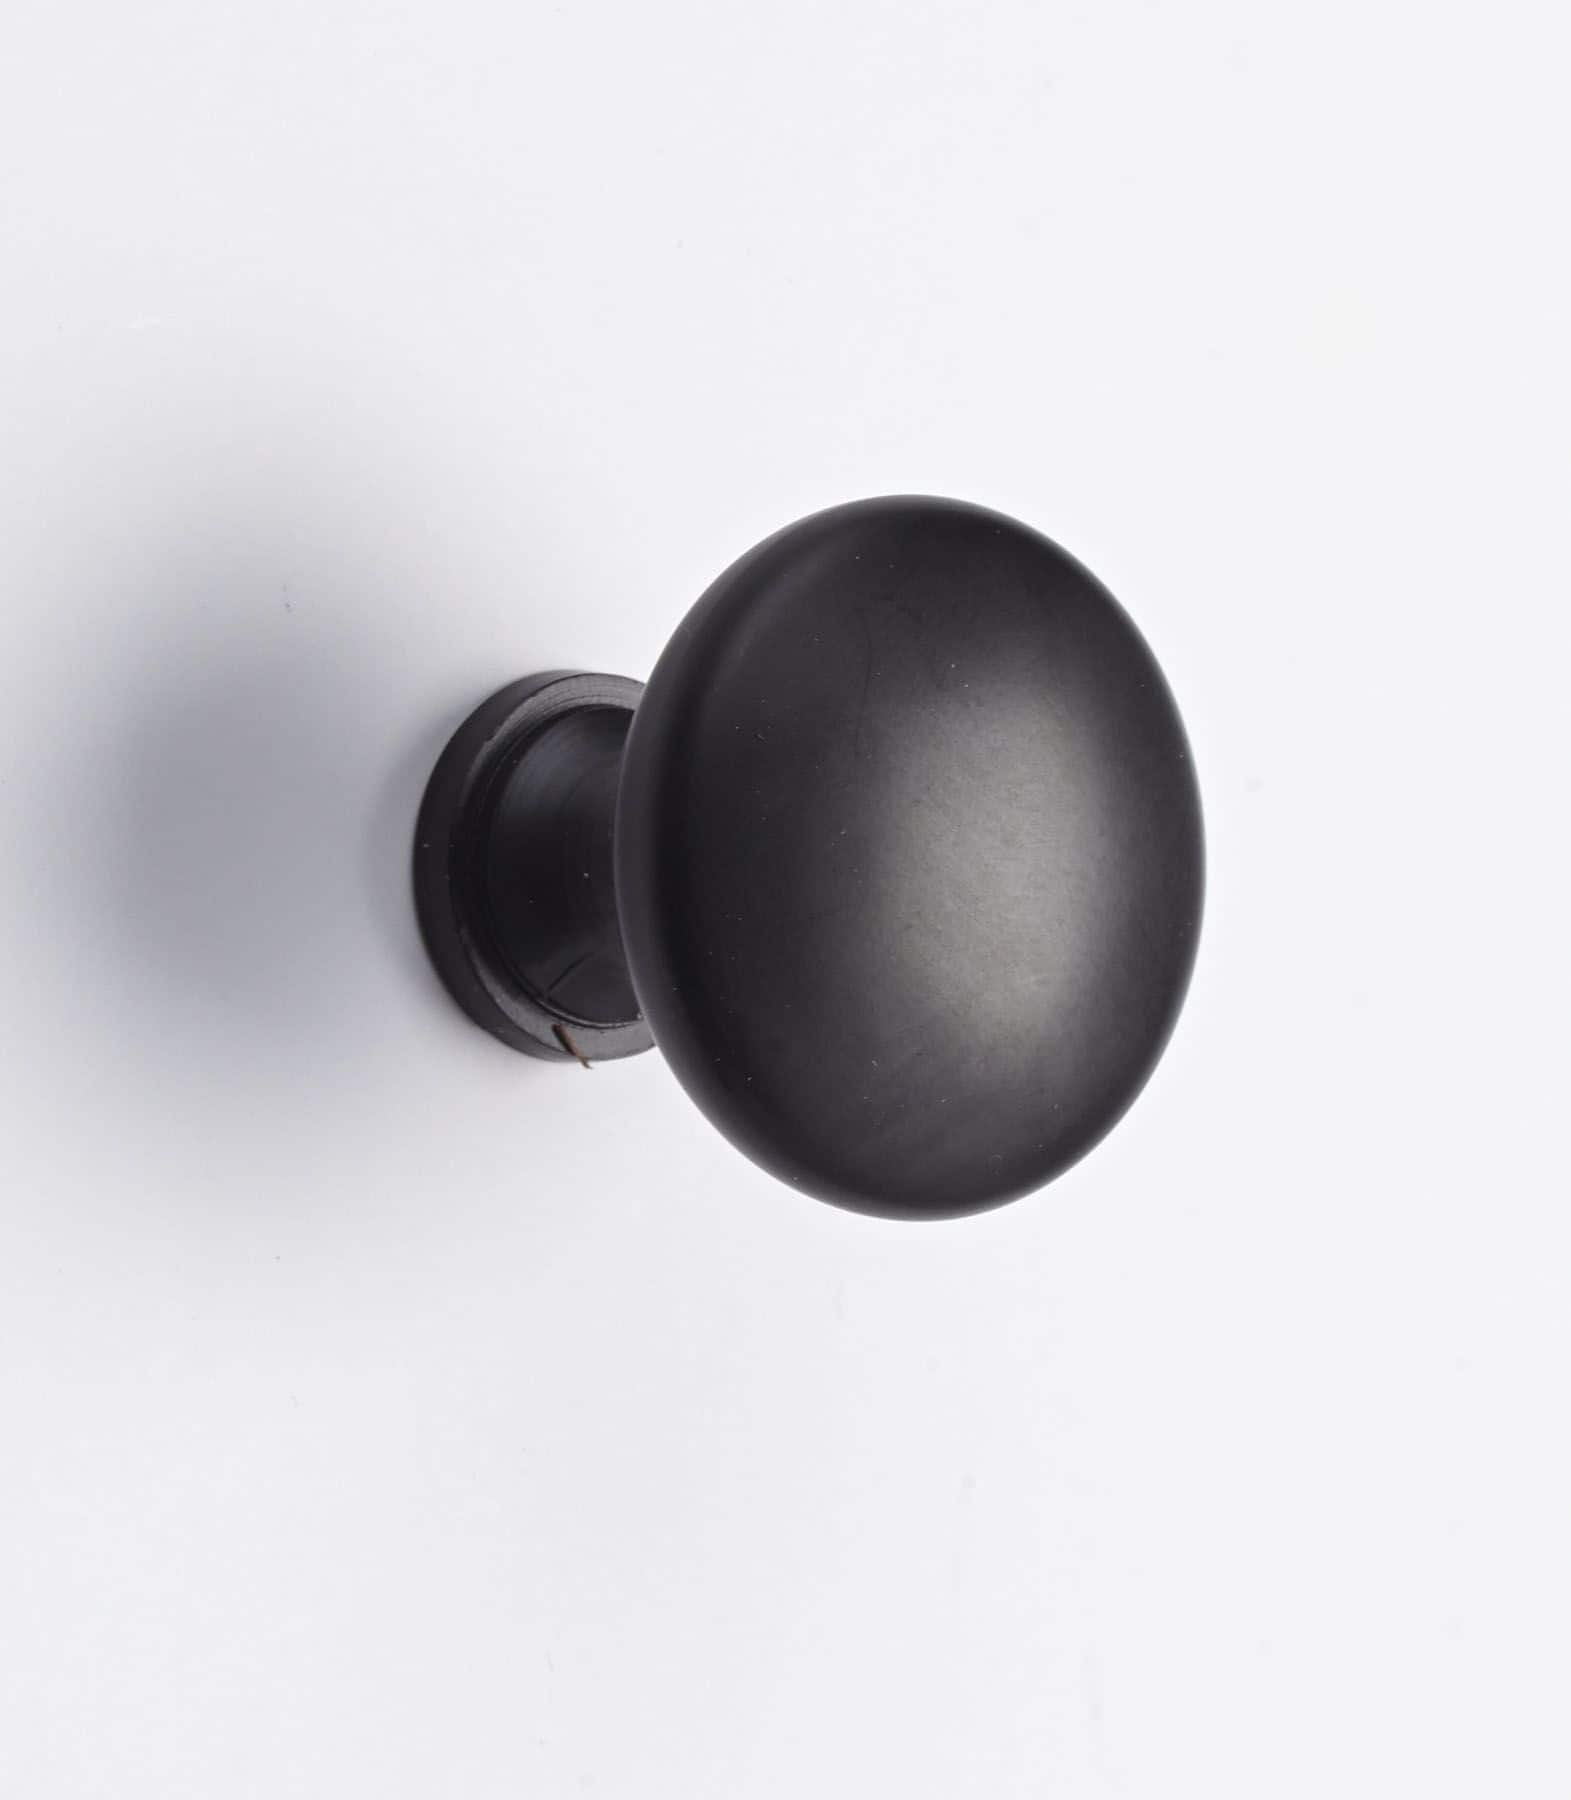 Ball door handle / wooden drawer knob - 3.8 cm / 38 mm diameter